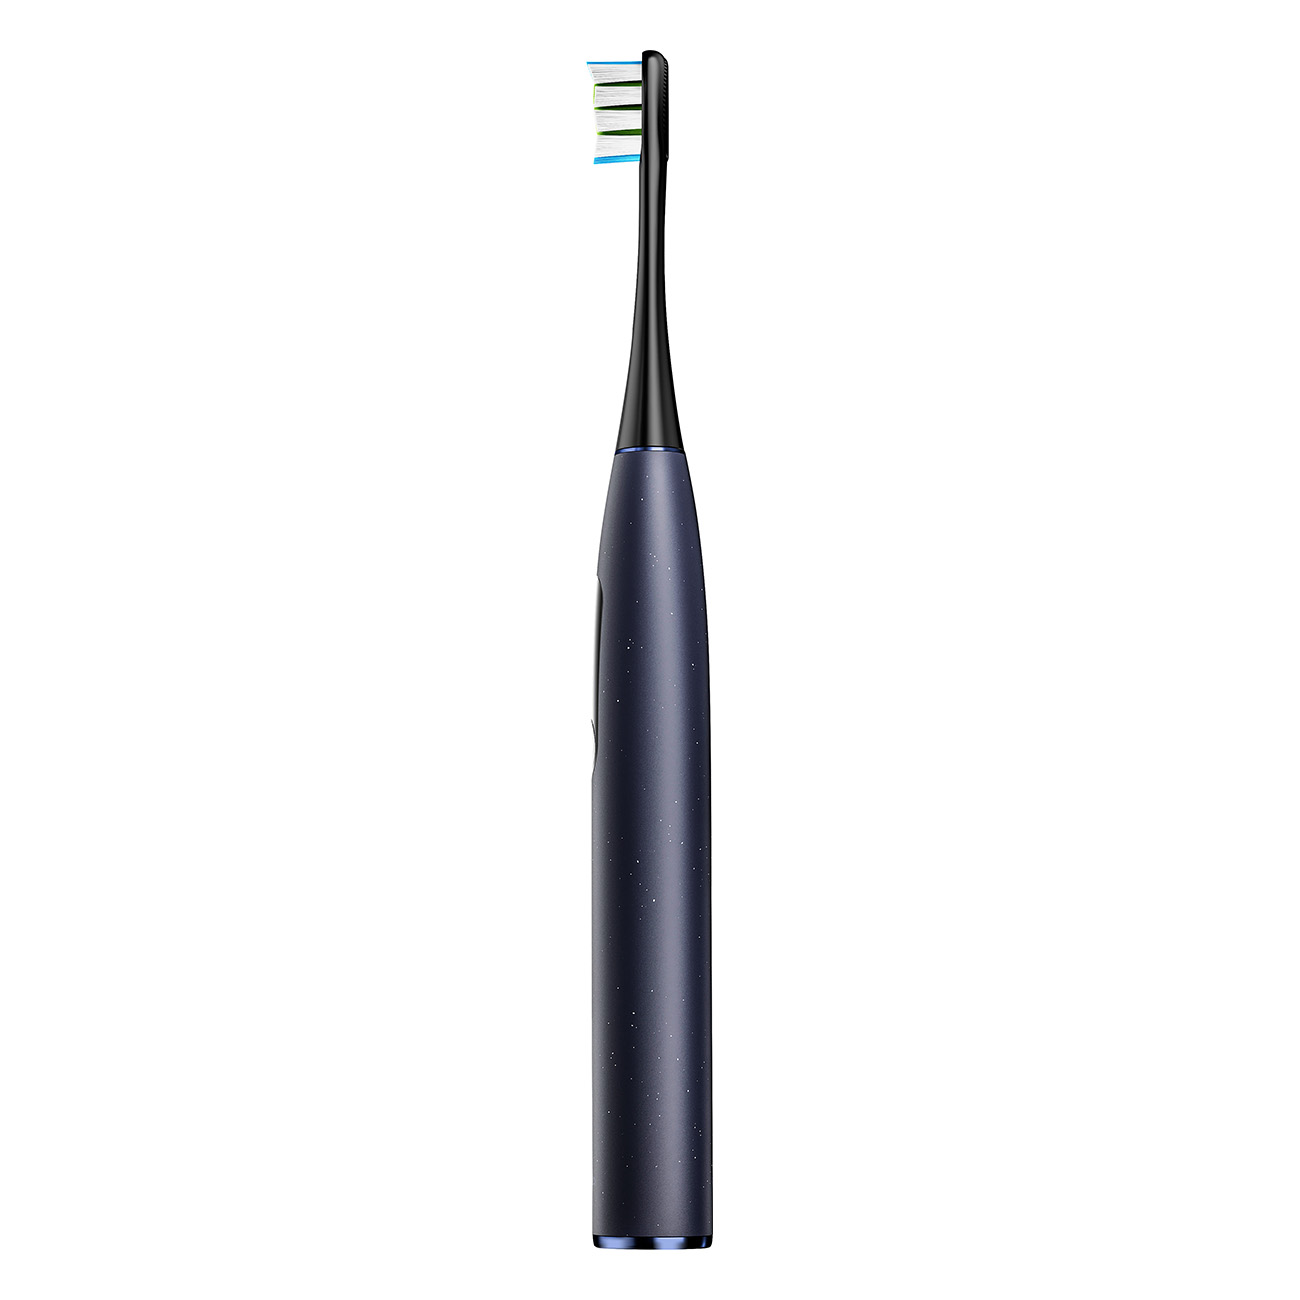 OCLEAN Pro Elektrische X Digital blau Toothbrush Zahnbürste Electric